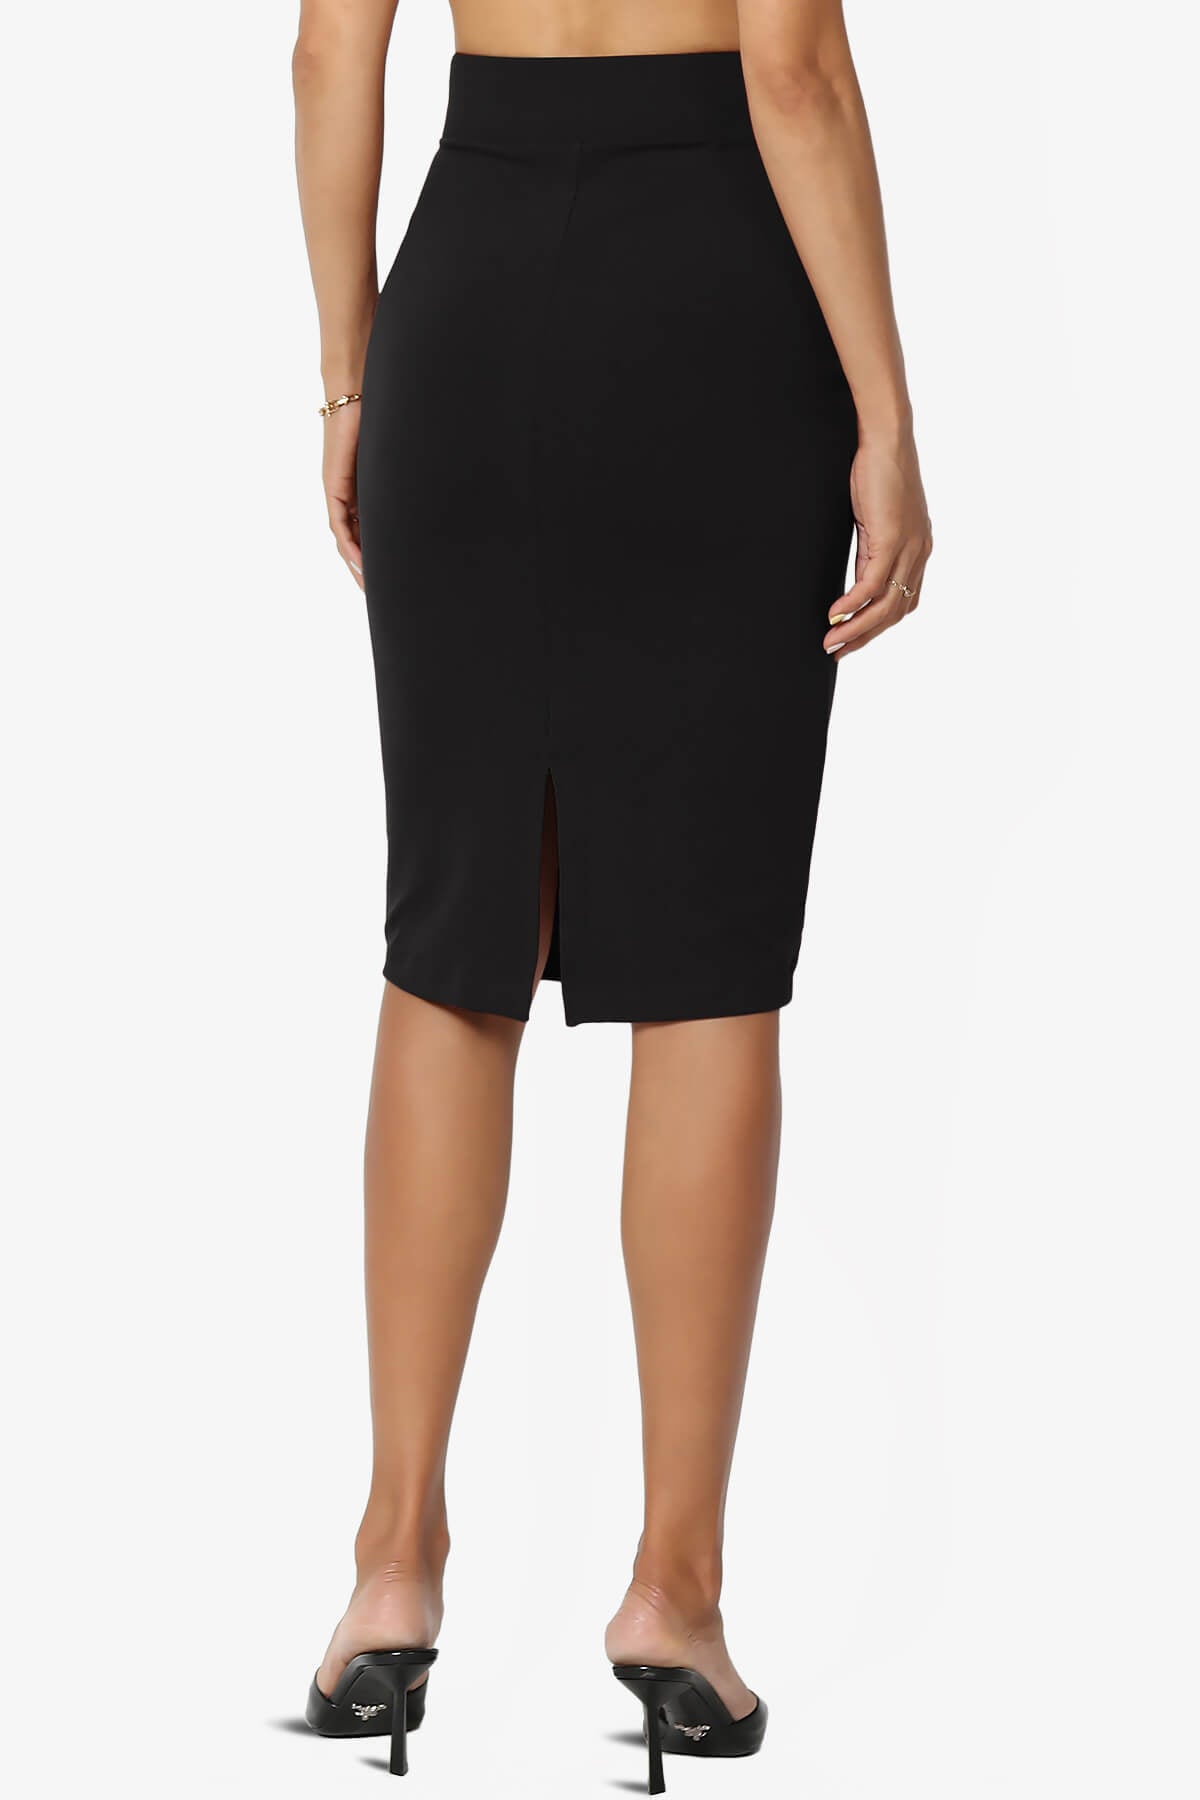 Midi Pencil Skirt In Fine Knit Bodycon Style Black, CY Boutique